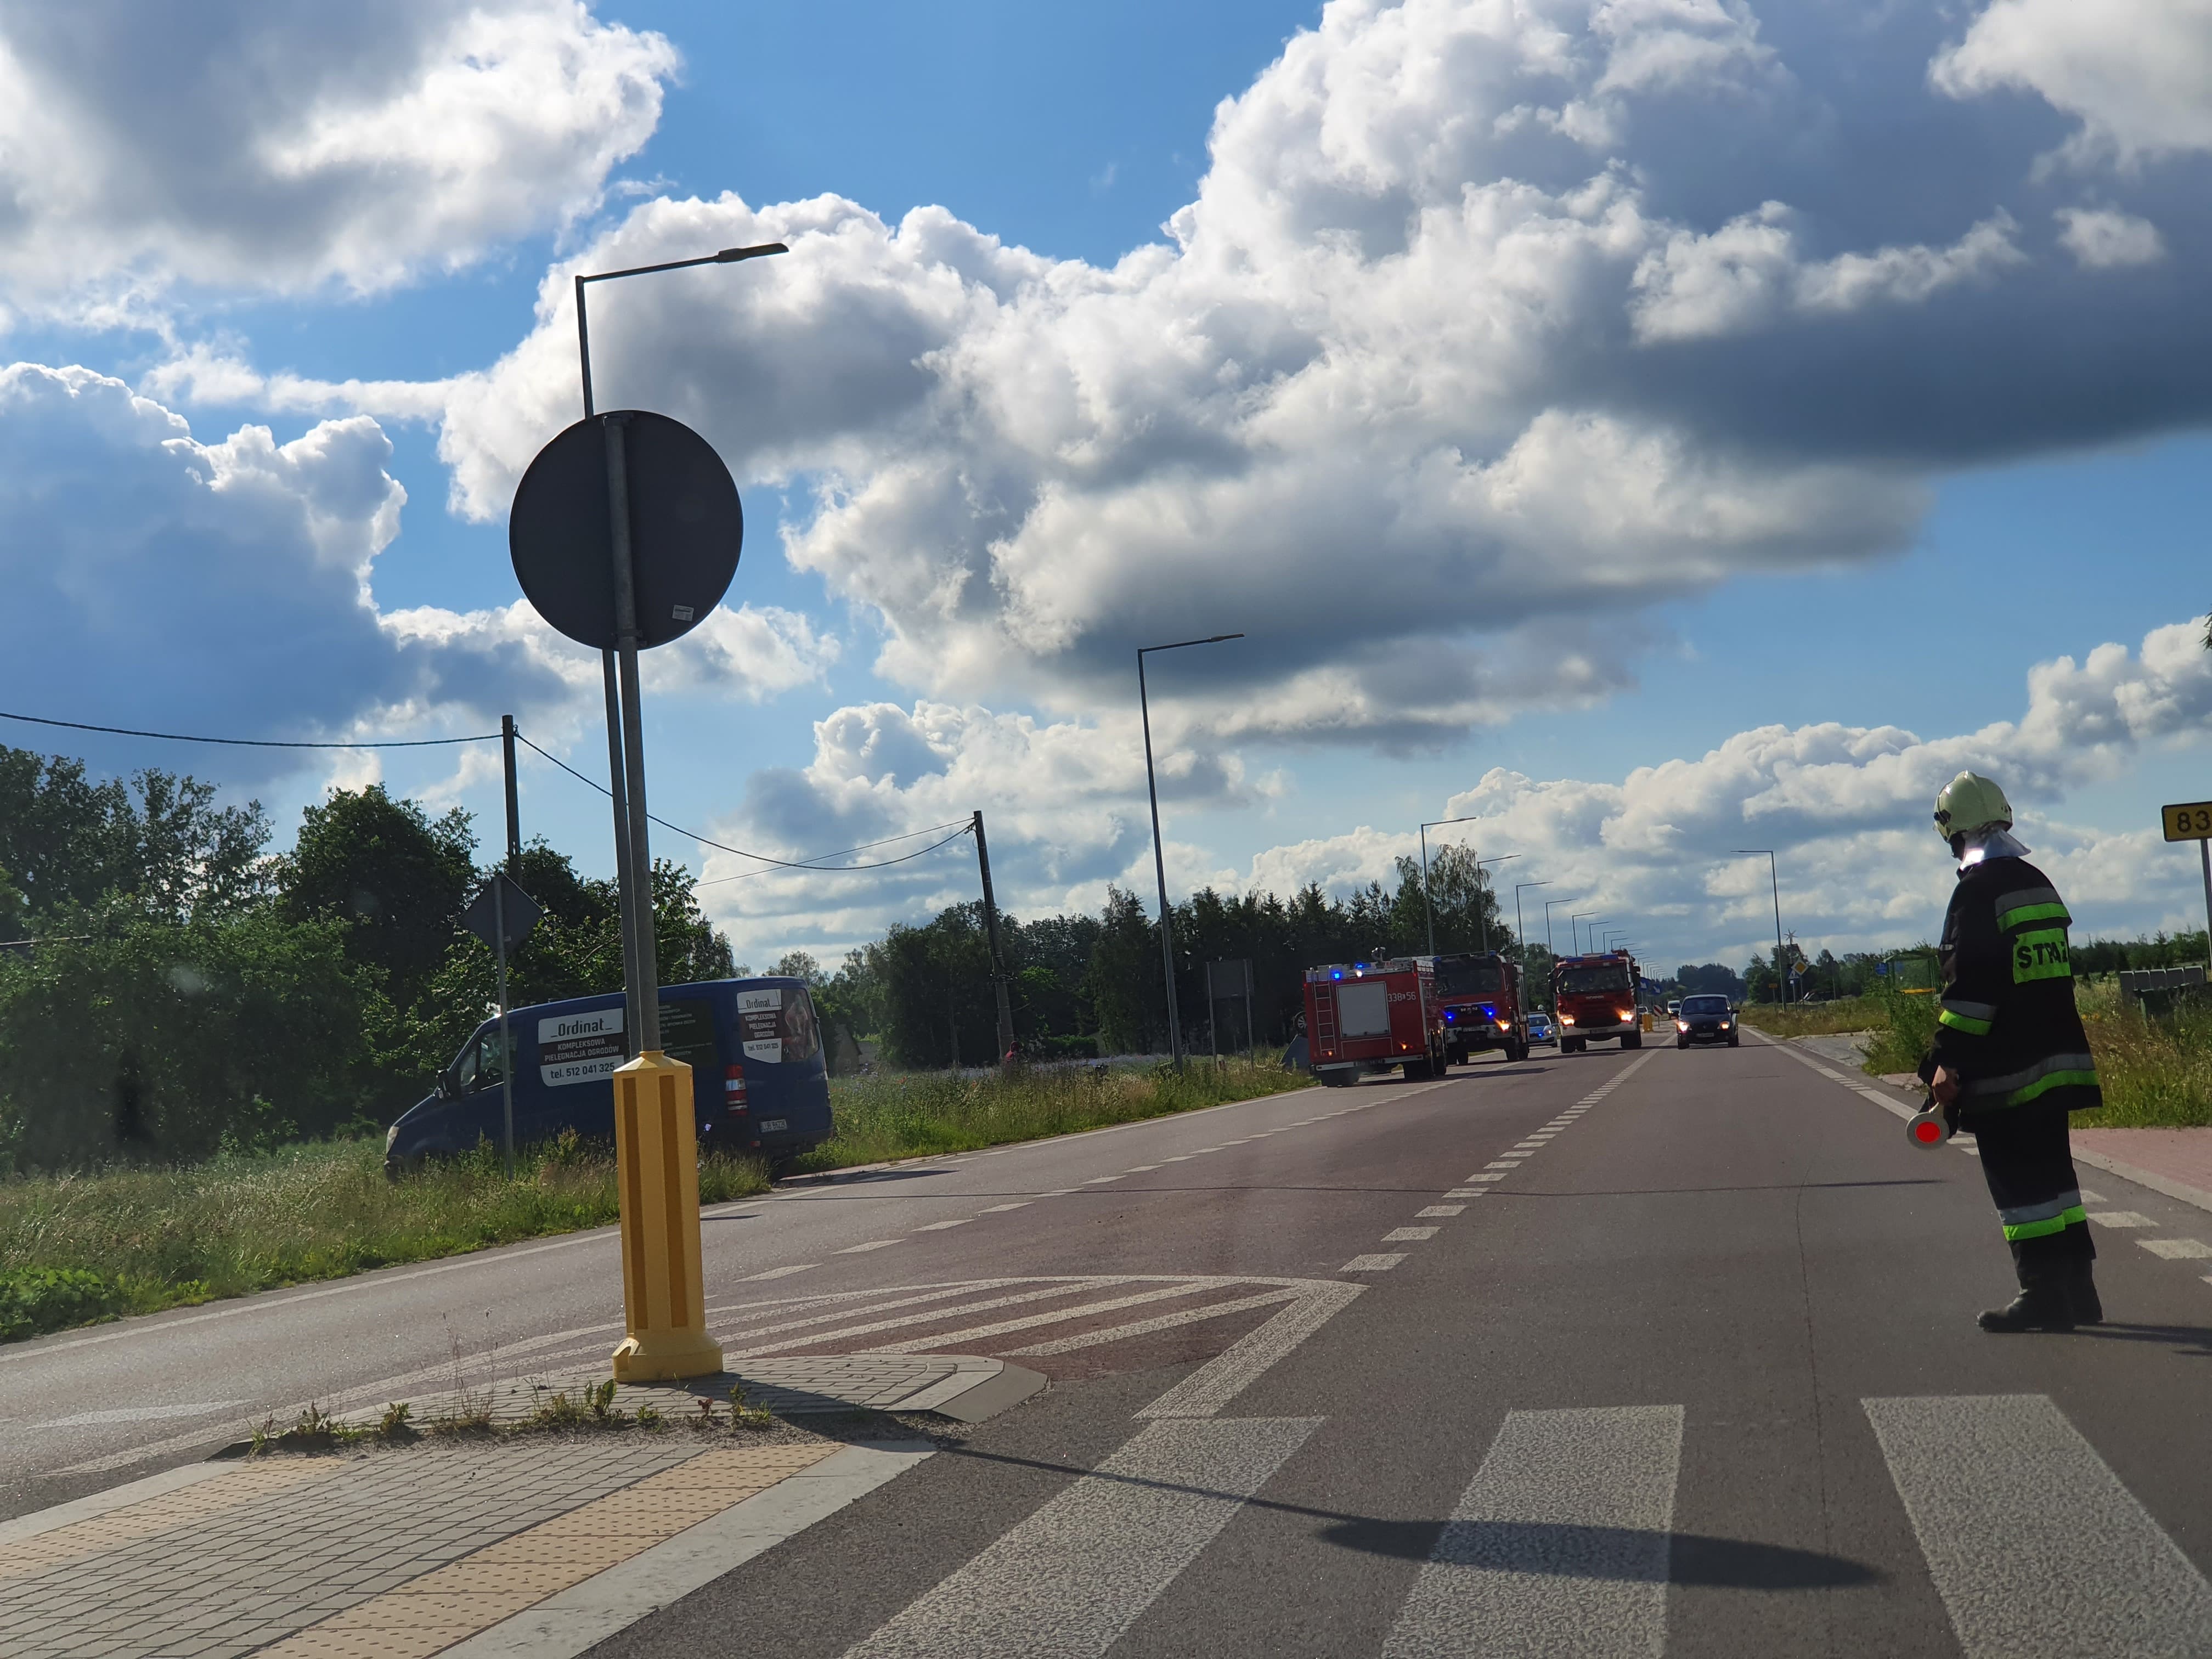 Dachowanie citroena na drodze wojewódzkiej. Utrudnienia w ruchu na trasie Lublin – Biłgoraj (zdjęcia)